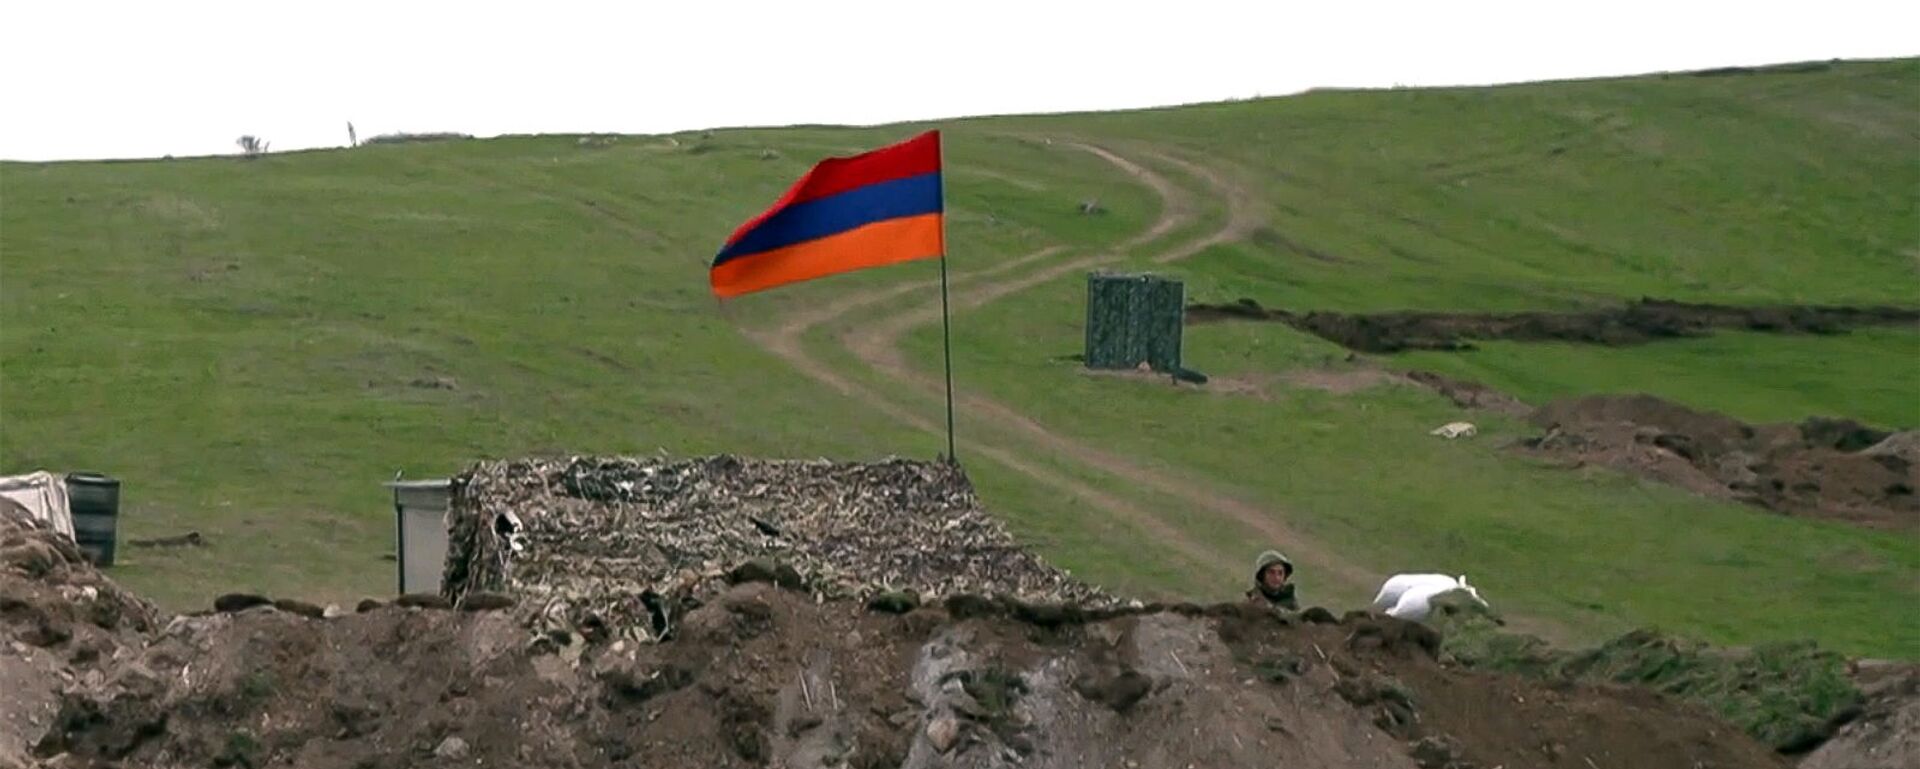 Армянский военнослужащий на армяно-азербайджанской границе - Sputnik Армения, 1920, 14.05.2021